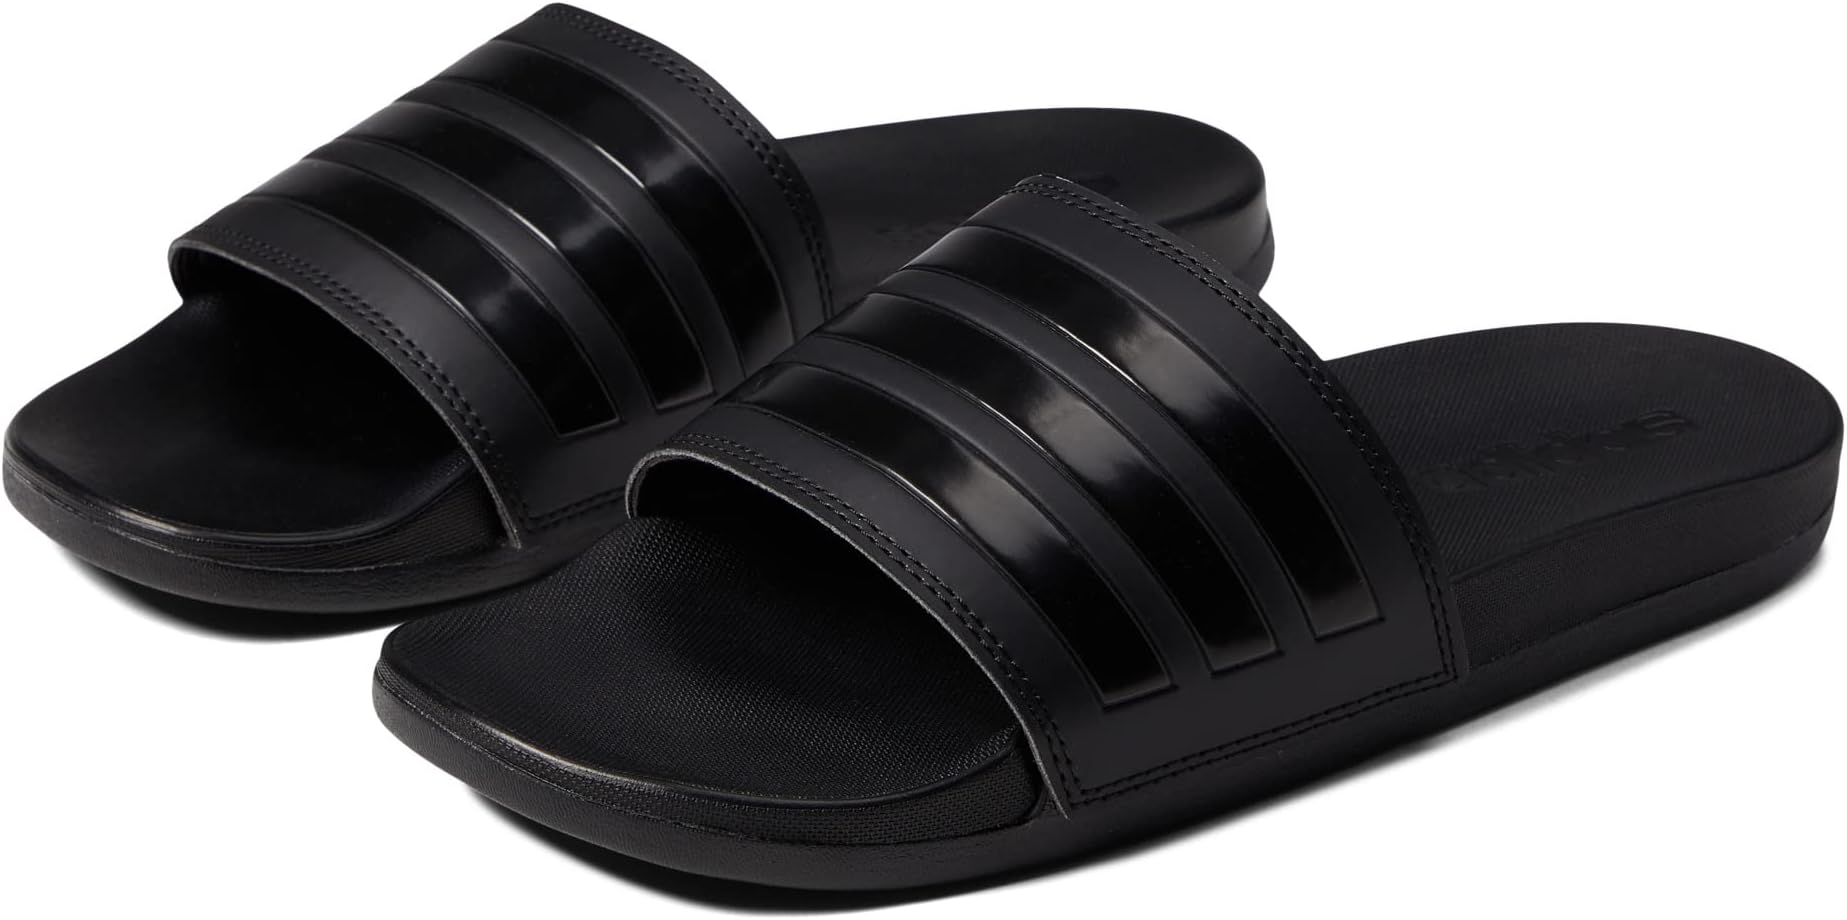 Шлепанцы Adilette Comfort Slides adidas, цвет Black/Black/Black 1